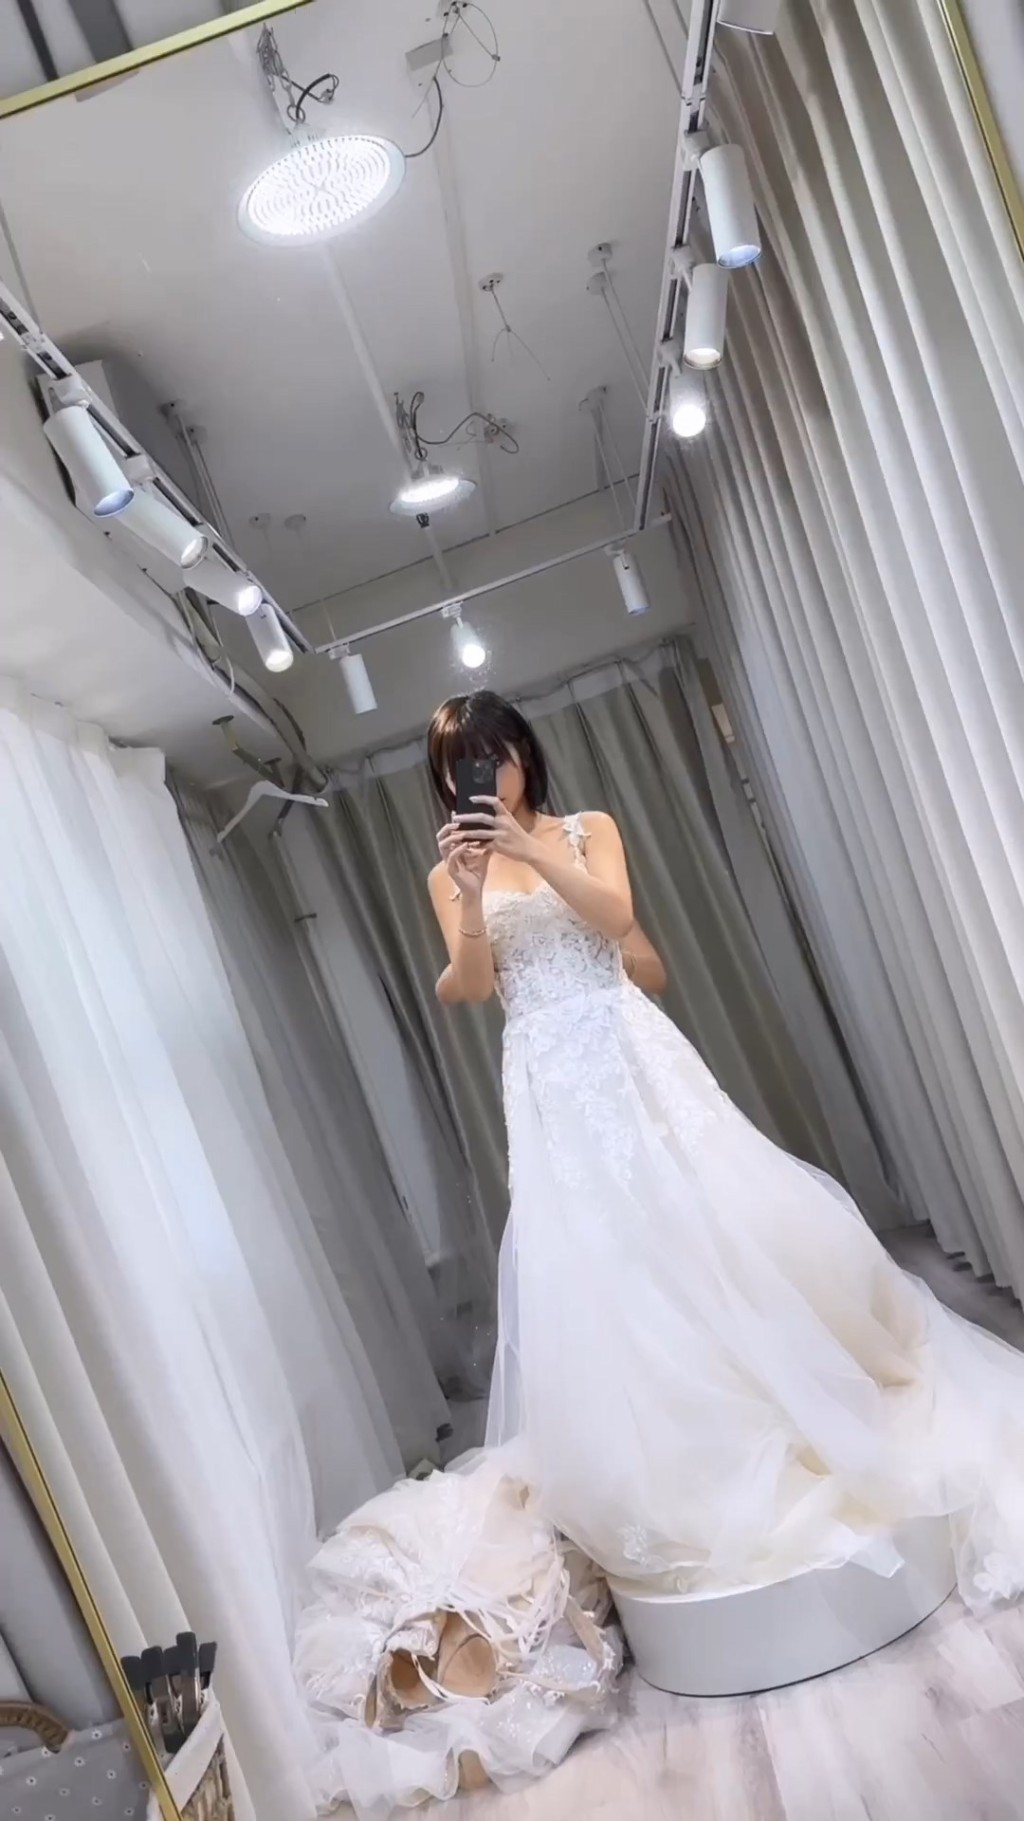 林颖彤解释身上只是似婚纱的礼服。